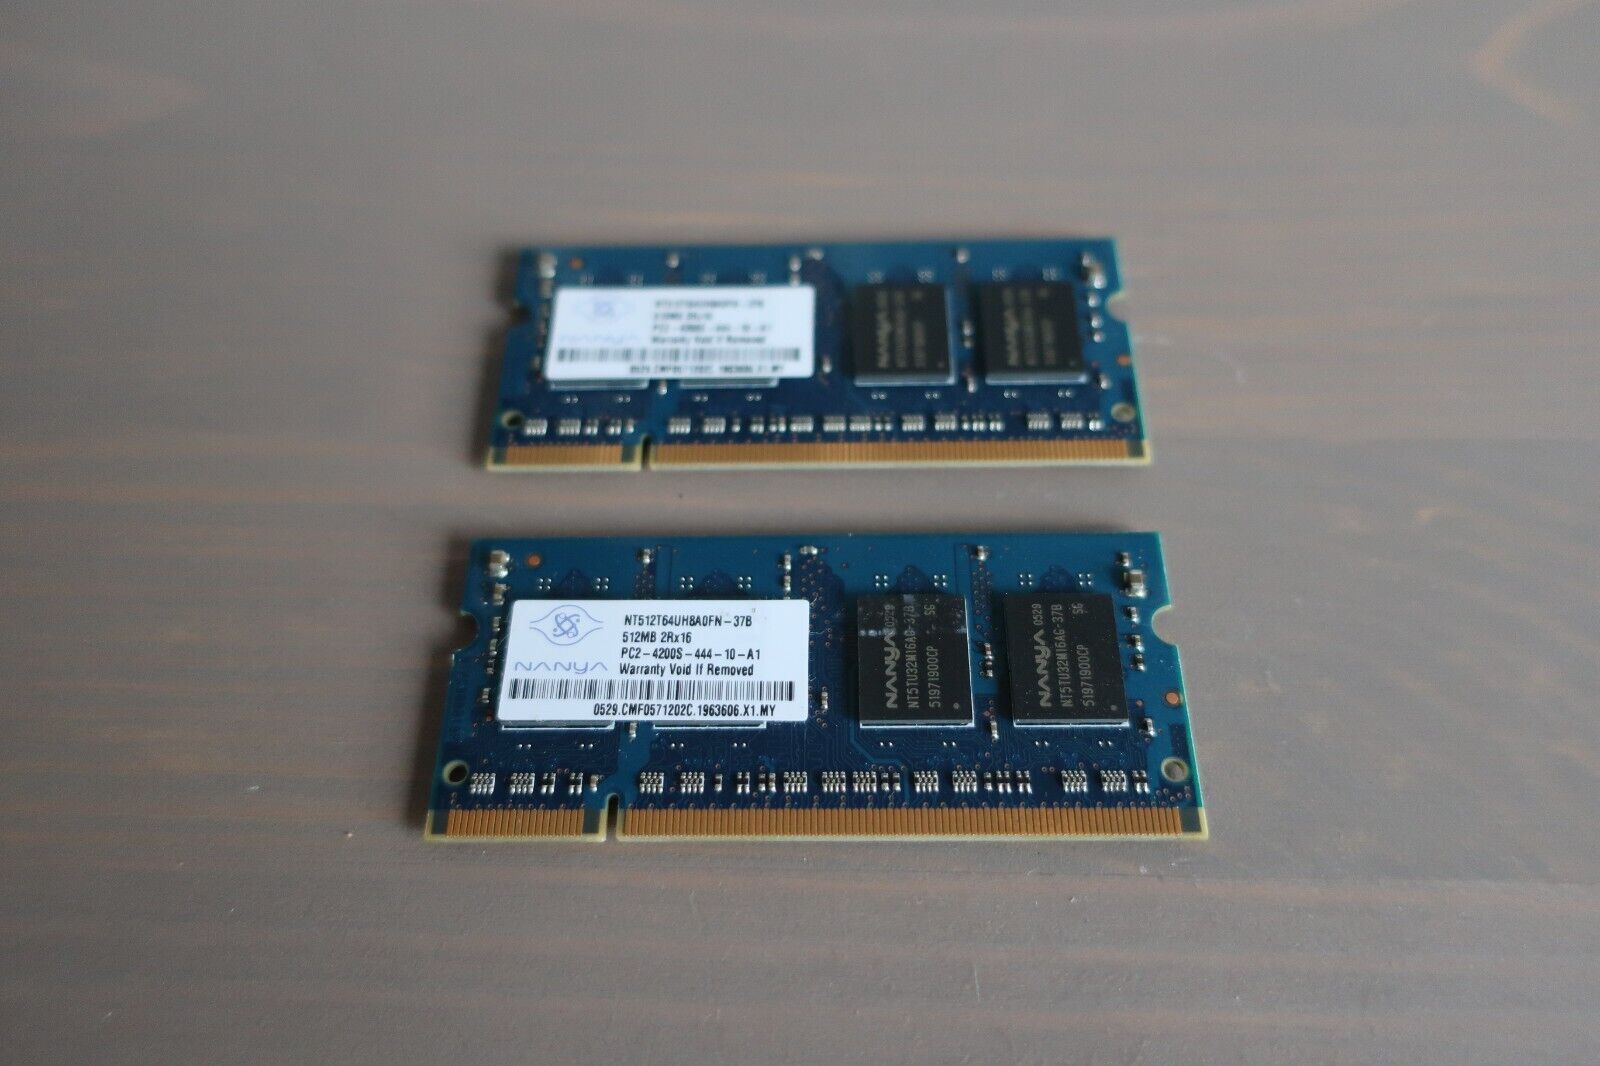 Nanya NT512T64UH8A0FN-37B 1GB Set (2x512MB) PC2-4200 DDR2-533MHz SODIMM 2Rx16